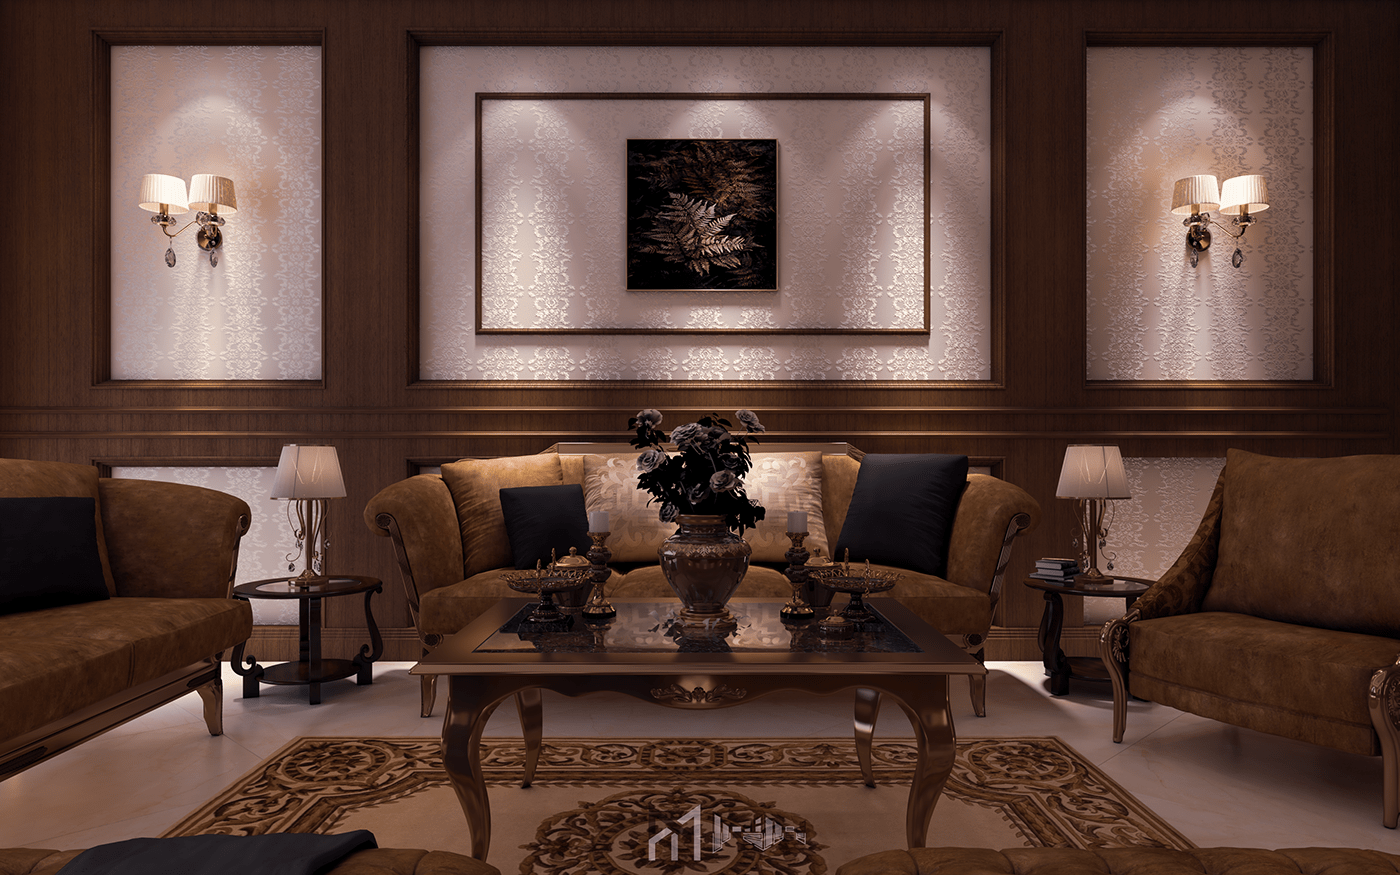 Classic decor decorative design Interior NEWCLASSIC reception visualization